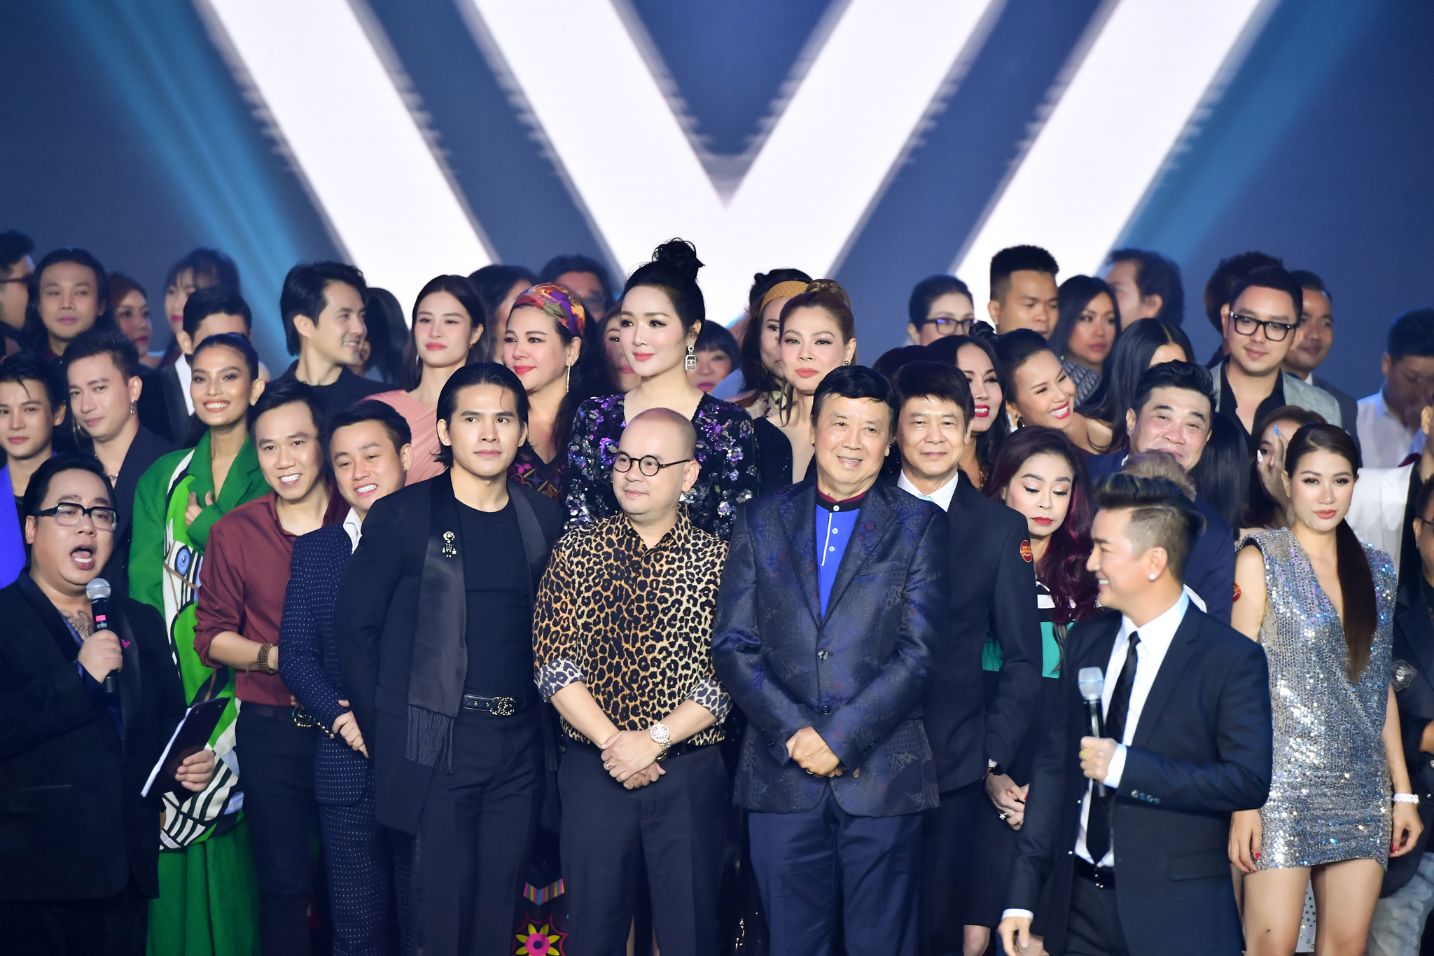 dam vinh hung 1 1 Hơn 80 nghệ sĩ đình đám mừng Đàm Vĩnh Hưng ra mắt MV và công ty mới